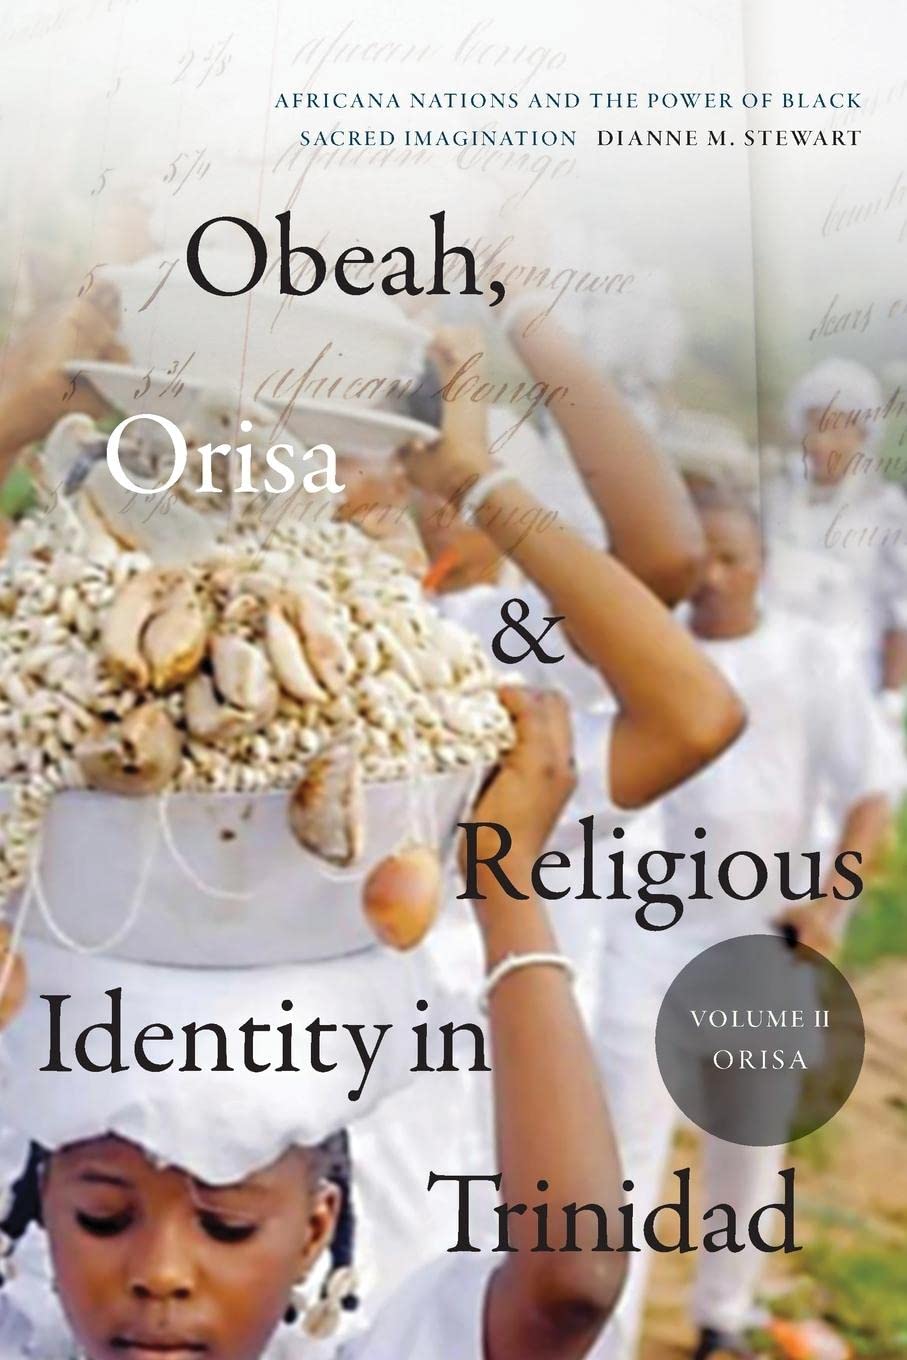 LIbri UK/US Dianne M. Stewart - Obeah, Orisa, And Religious Identity In Trinidad, Volume Ii, Orisa NUOVO SIGILLATO, EDIZIONE DEL 27/09/2022 SUBITO DISPONIBILE